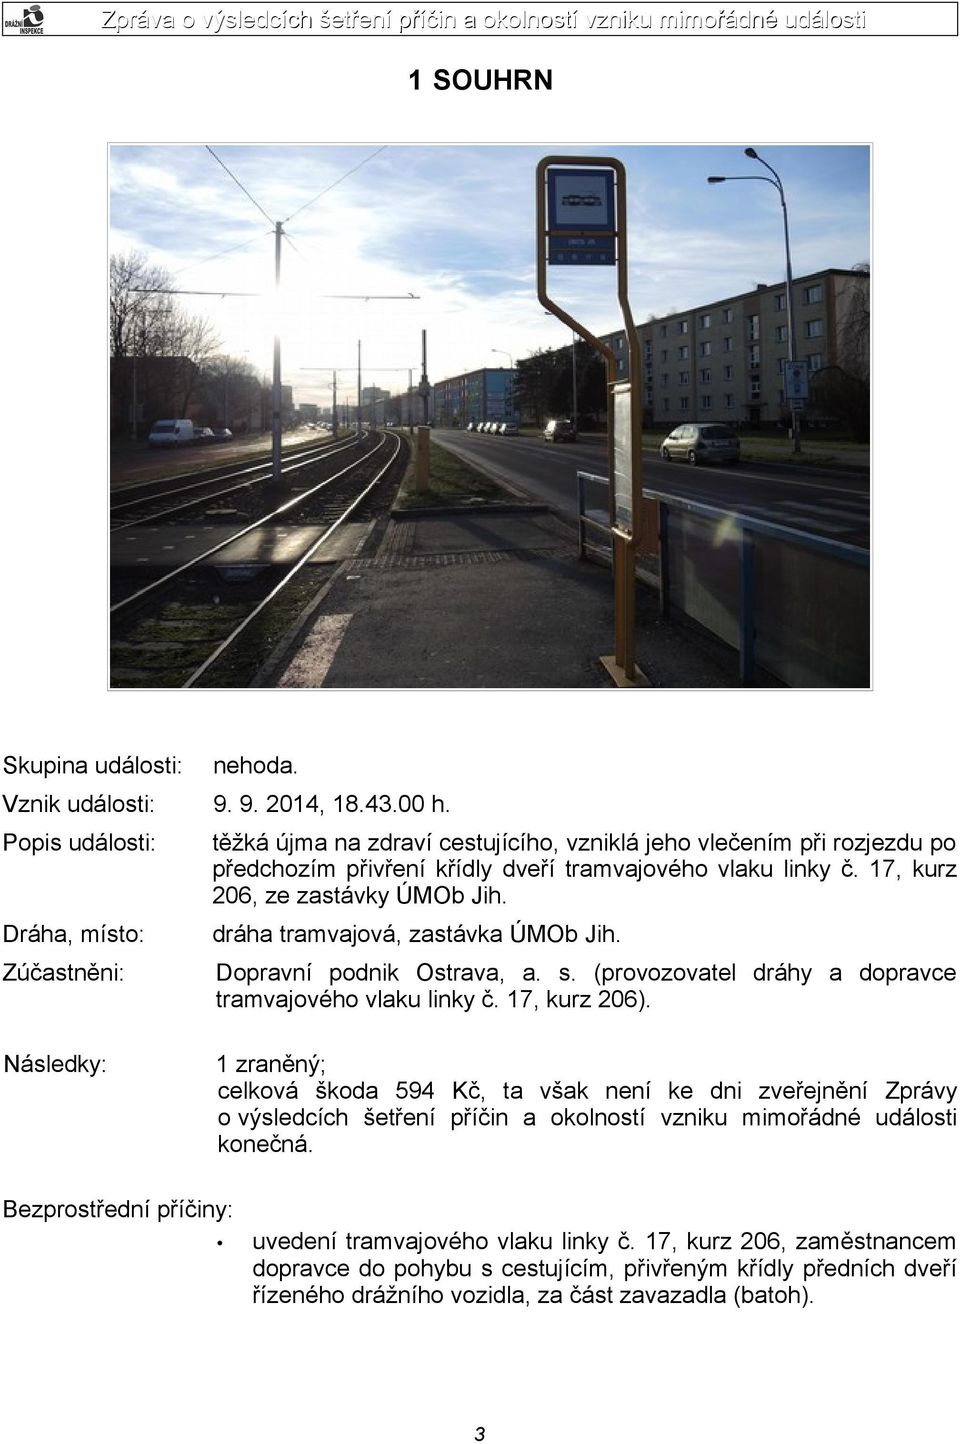 17, kurz 206, ze zastávky ÚMOb Jih. dráha tramvajová, zastávka ÚMOb Jih. Dopravní podnik Ostrava, a. s. (provozovatel dráhy a dopravce tramvajového vlaku linky č. 17, kurz 206).